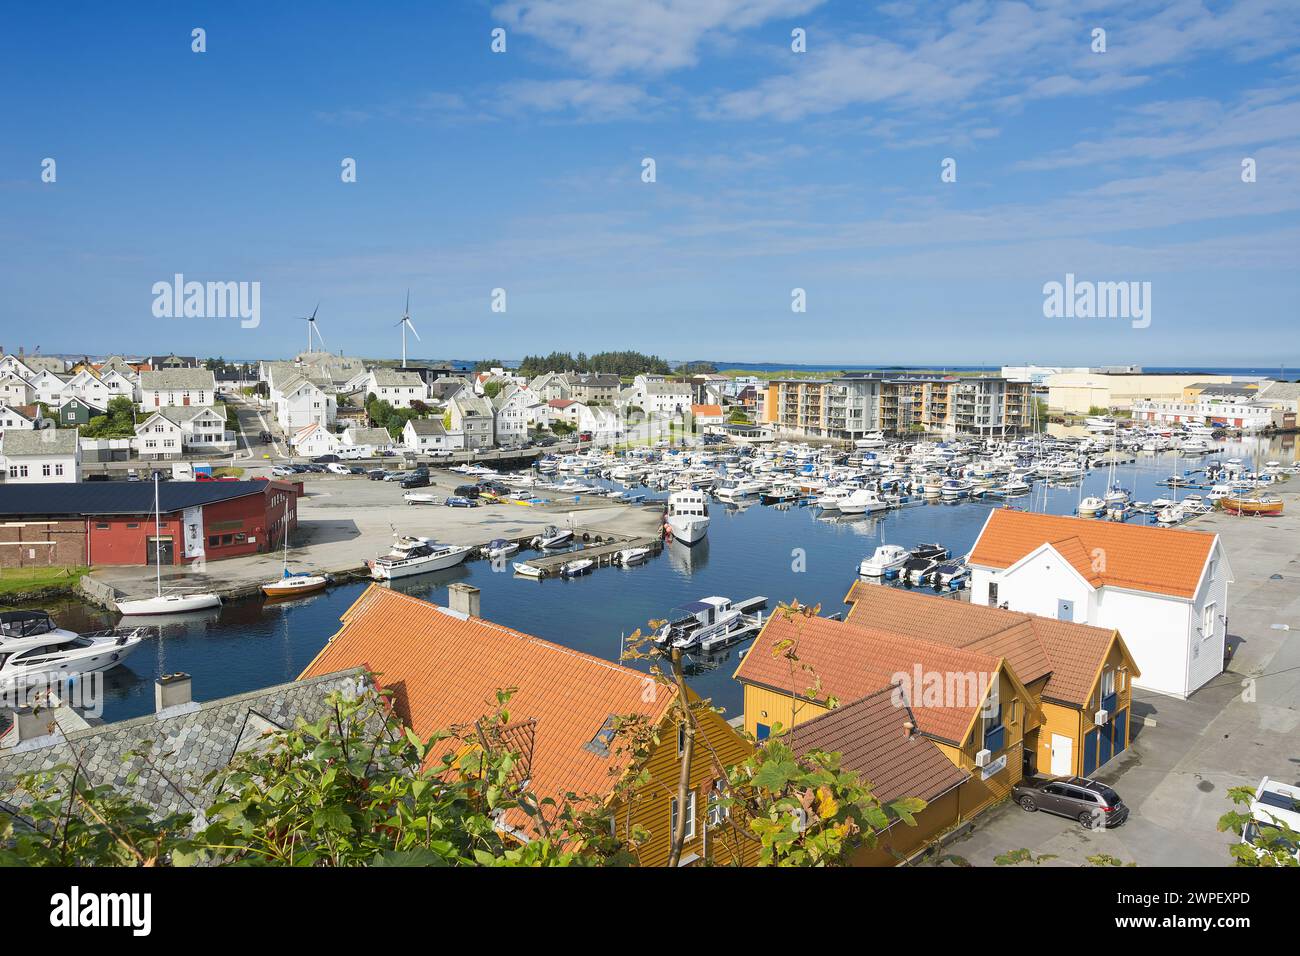 Norway: Haugesund tourist destination popular with cruise ships. Stock Photo